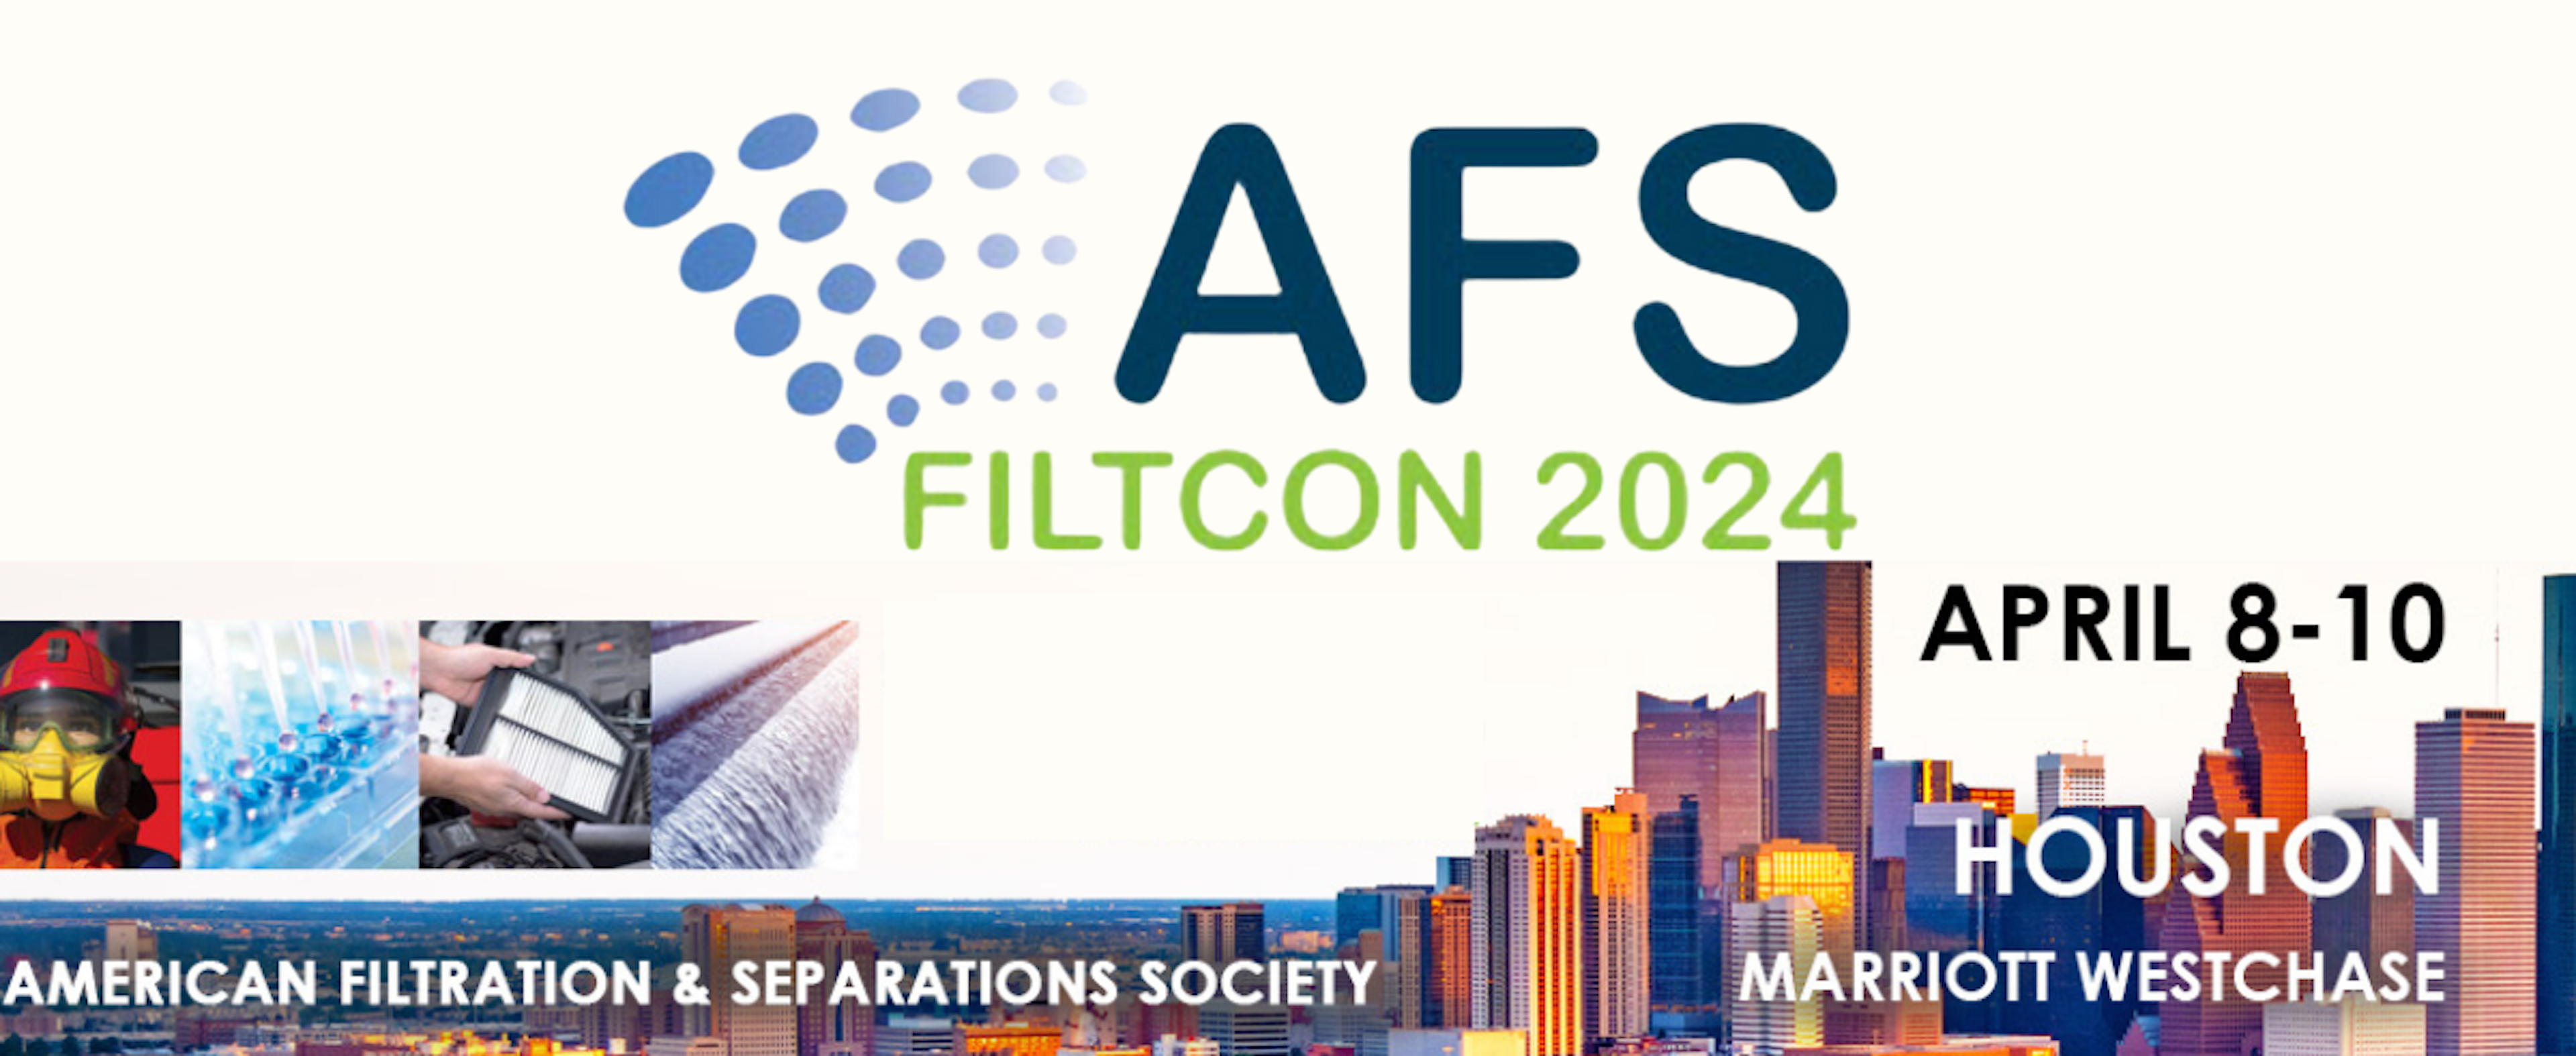 AFS Filtcon 2024 banner